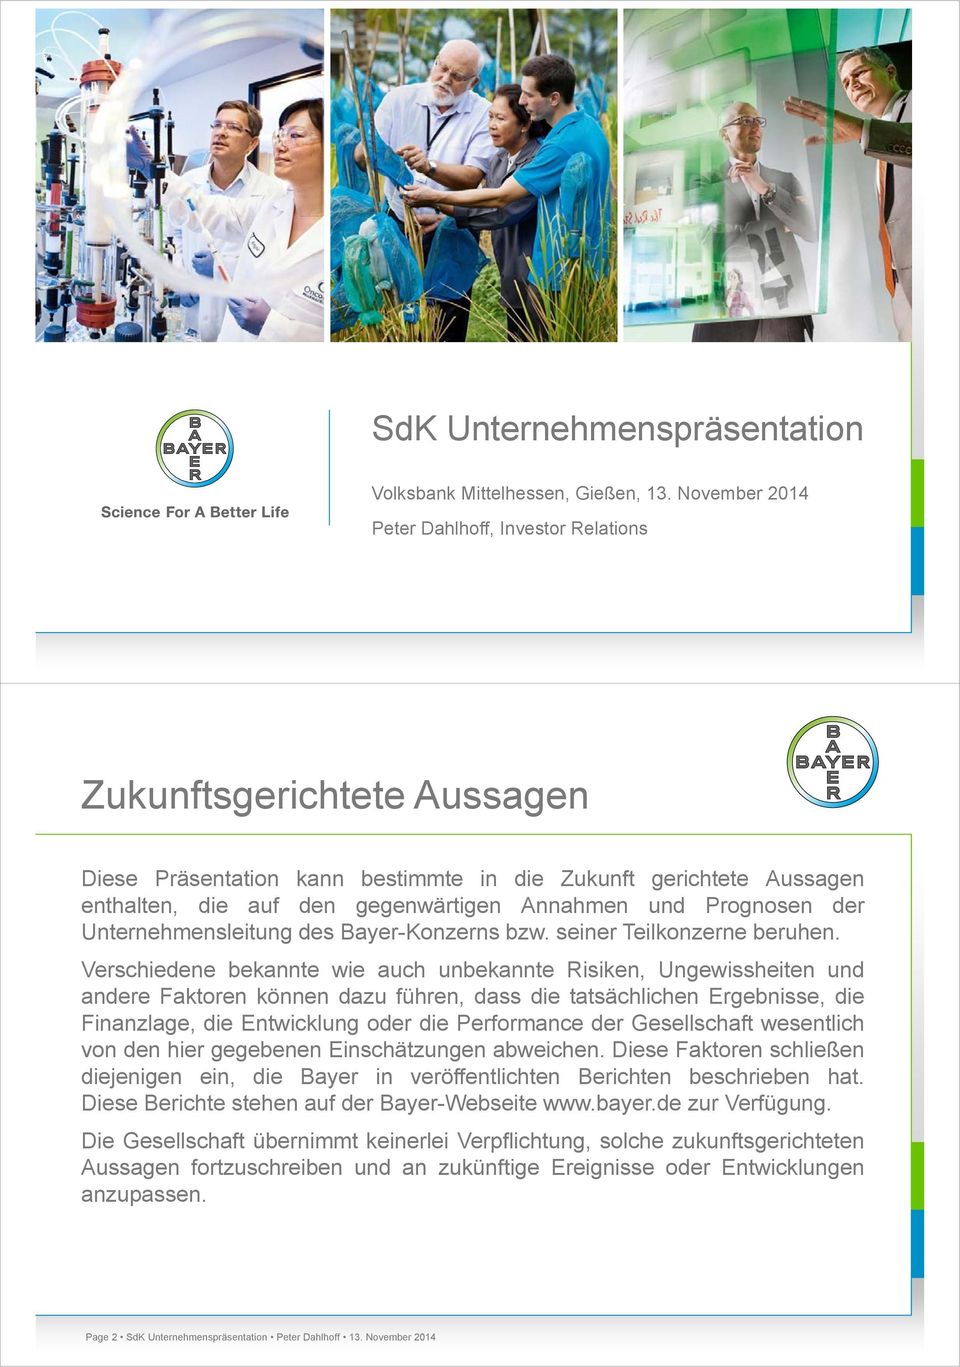 Prognosen der Unternehmensleitung des Bayer-Konzerns bzw. seiner Teilkonzerne beruhen.